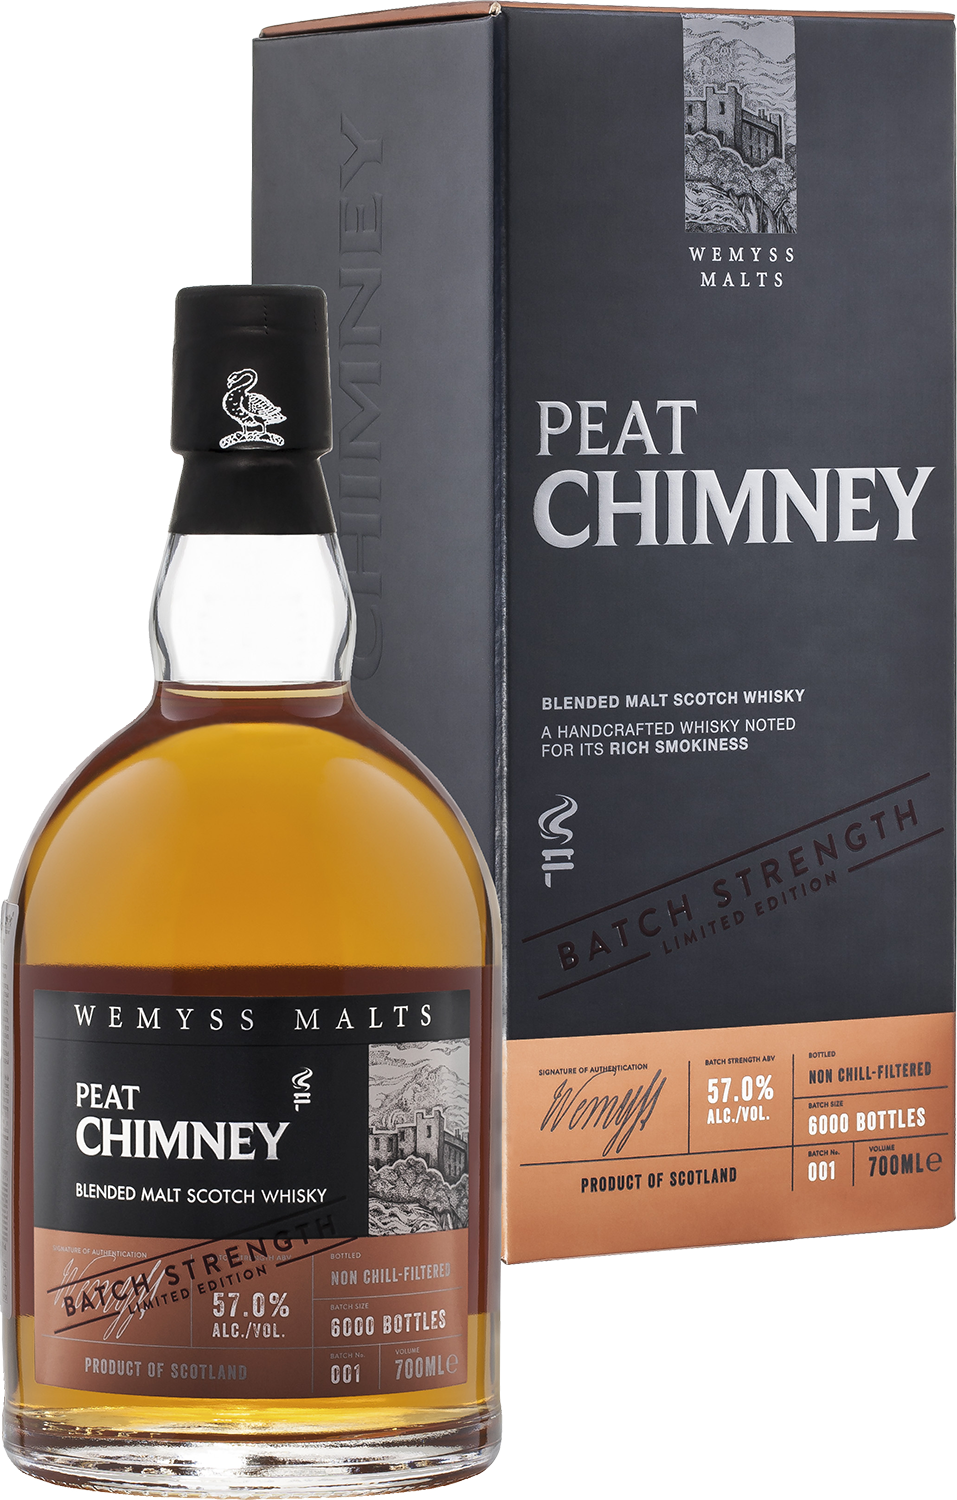 Peat Chimney Batch Strength Wemyss Malts blended malt scotch whisky wemyss malts the hive batch strength blended malt scotch whisky gift box